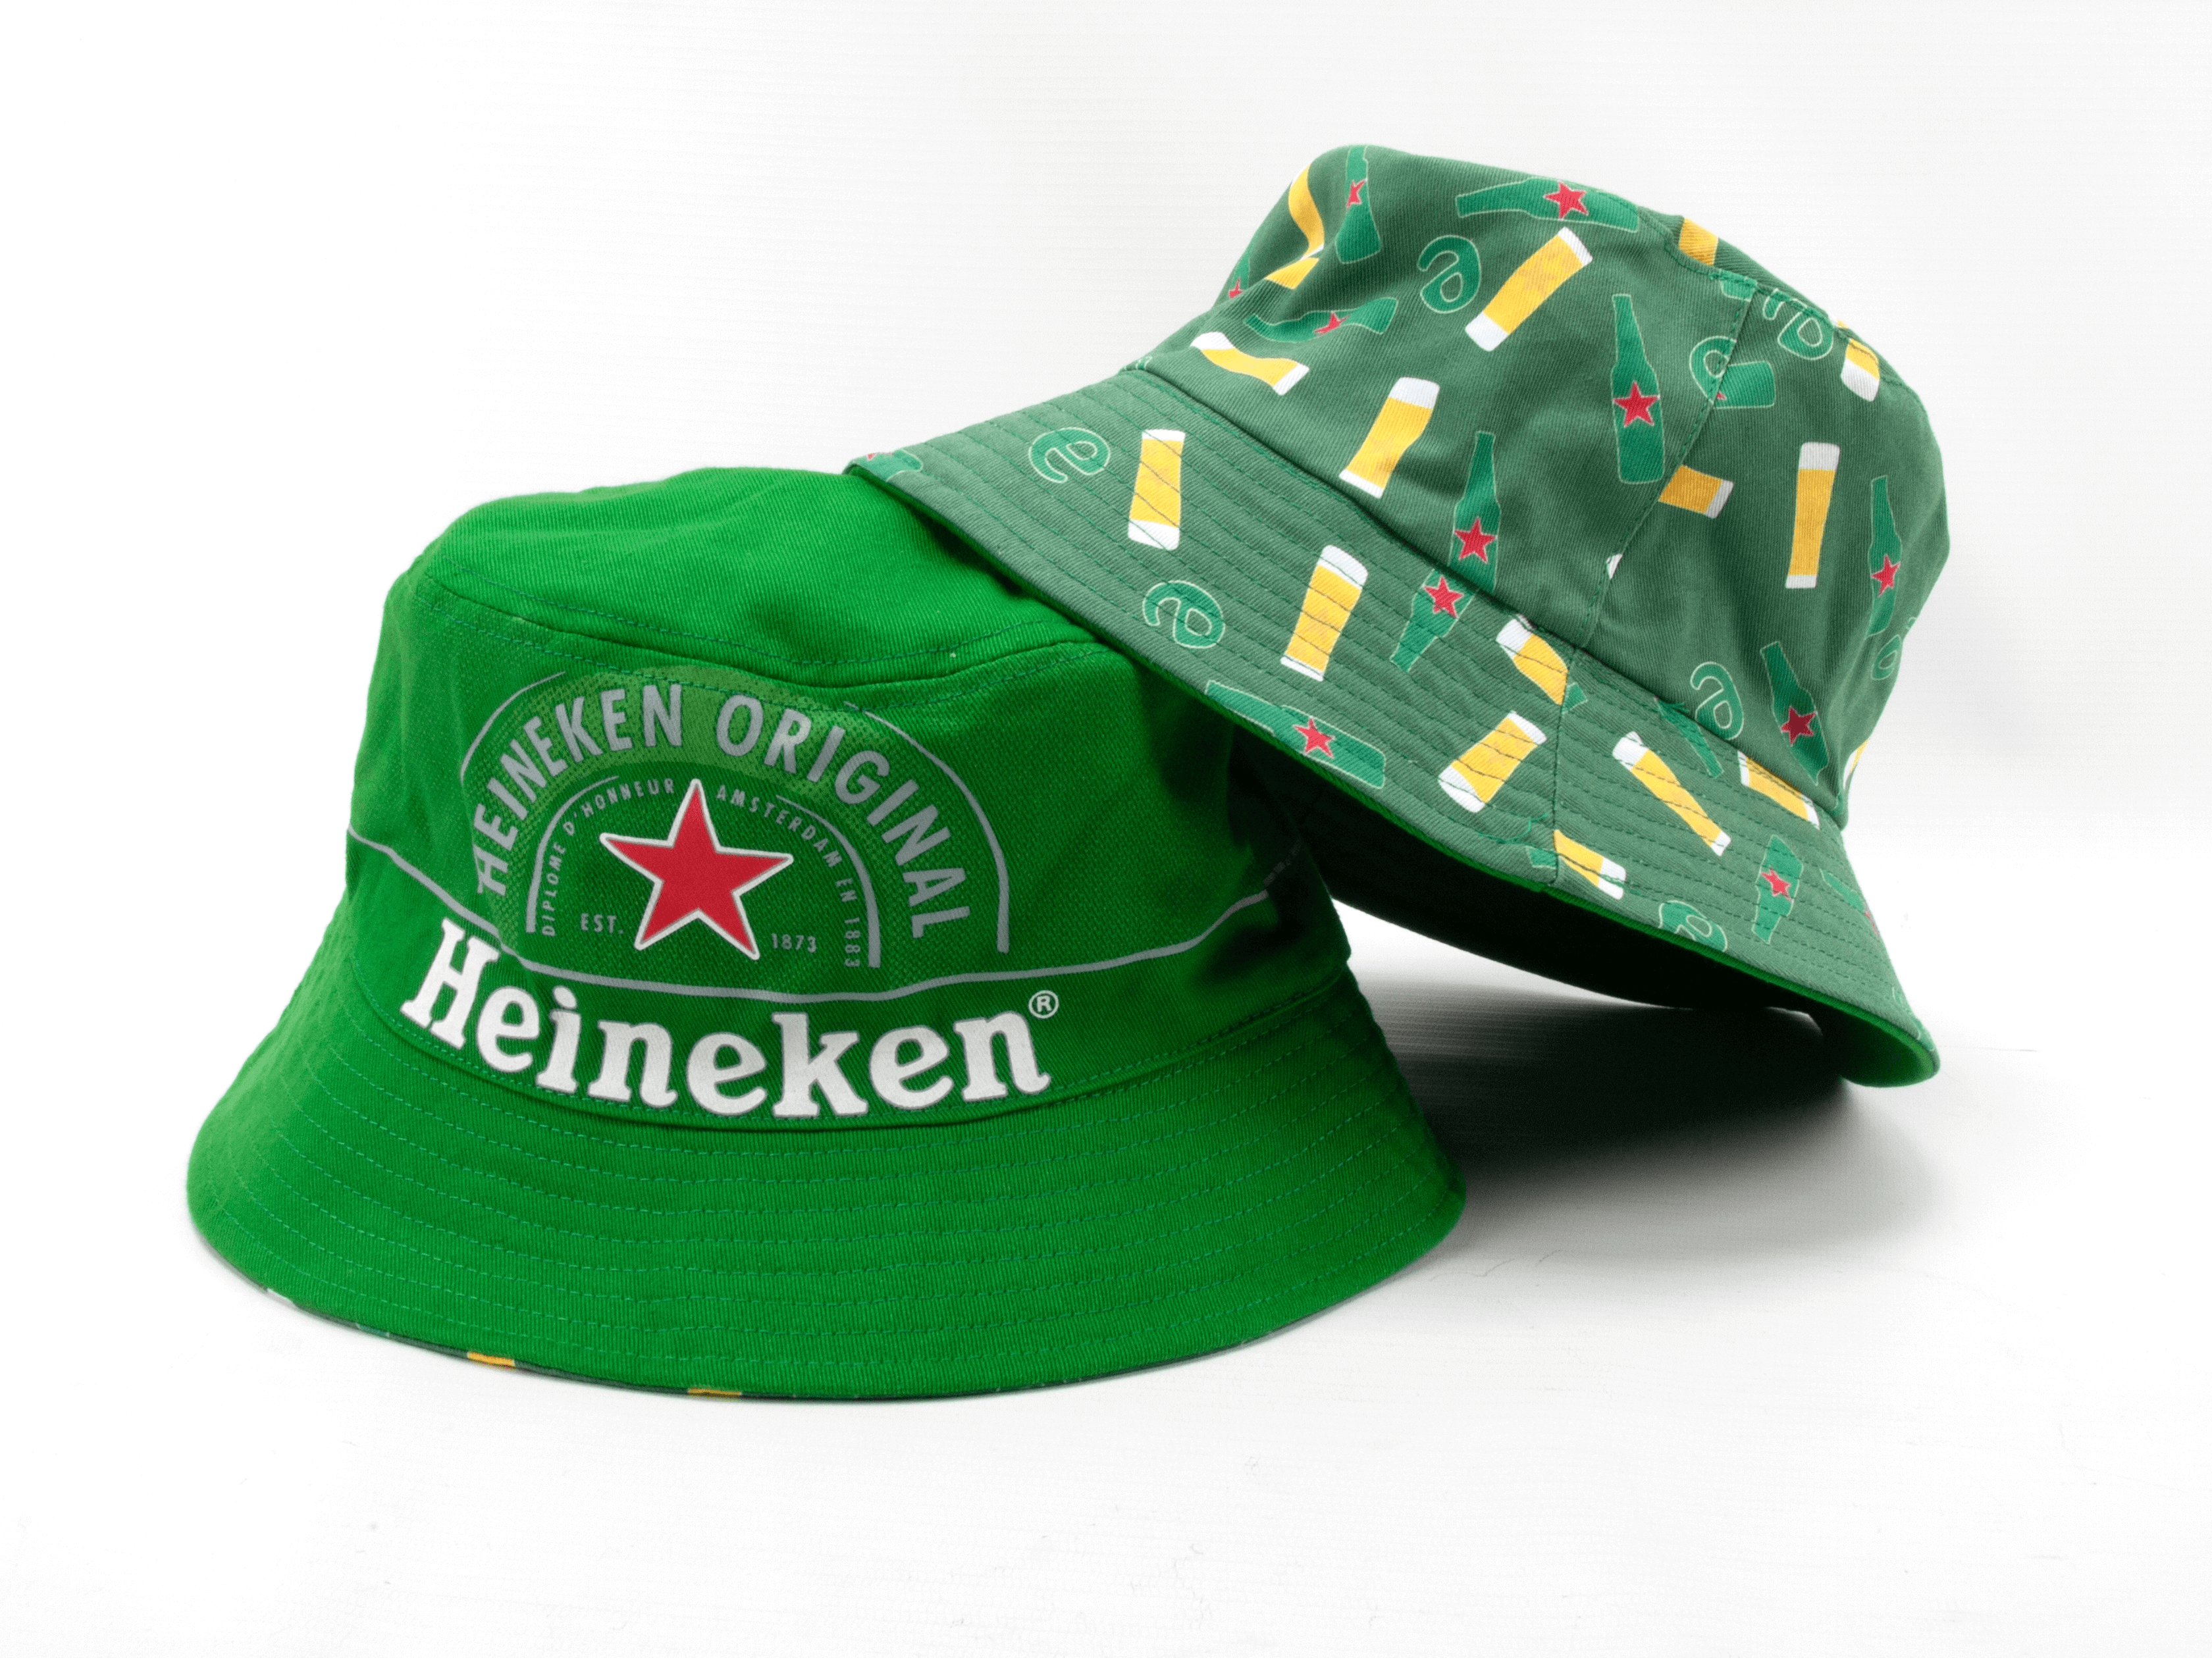 Heineken ® Bucket Hat